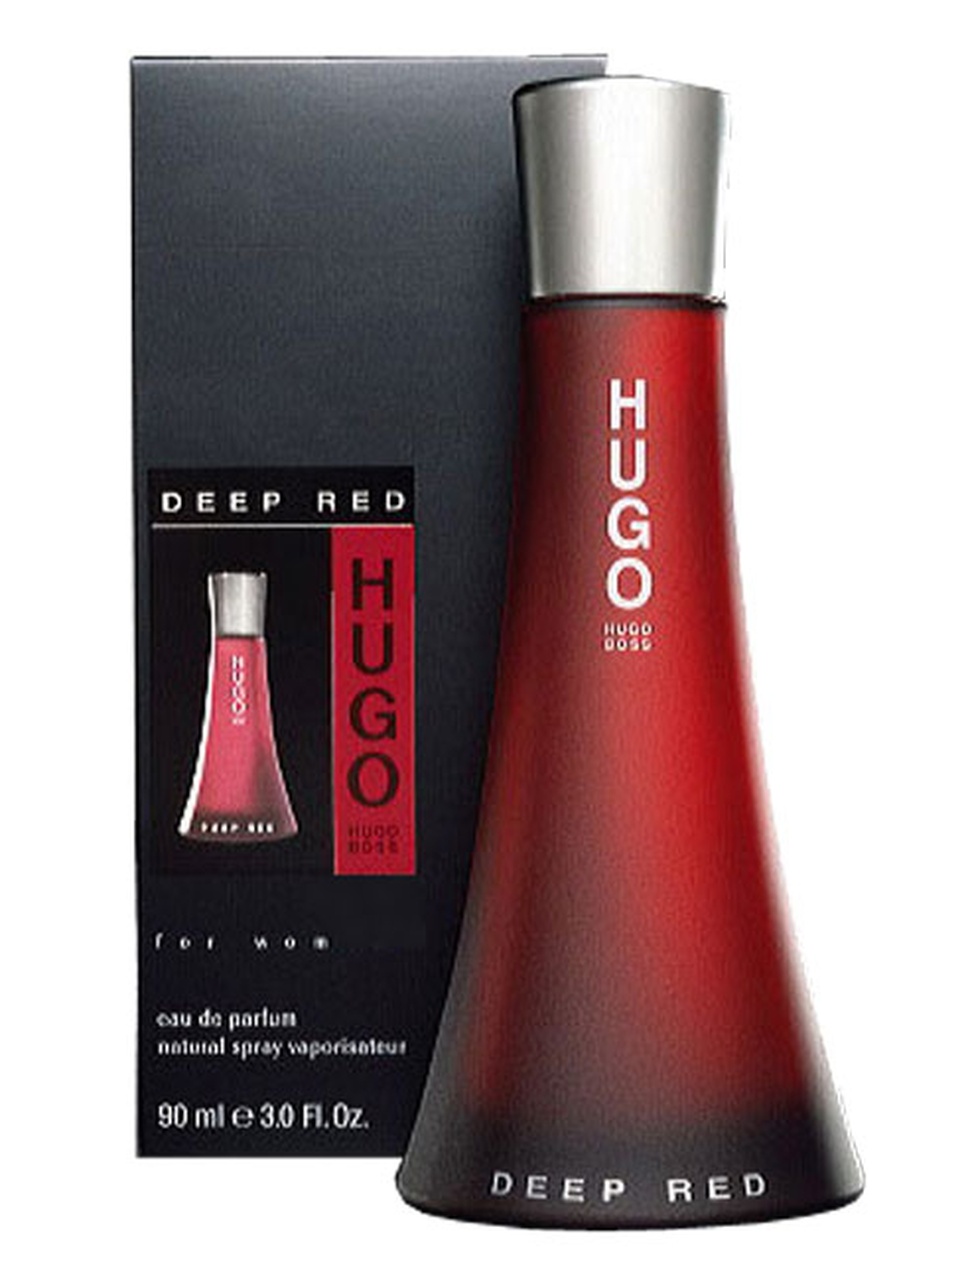 Hugo для женщин. Hugo Boss Deep Red. Туалетная вода Хьюго босс женские женские духи Hugo Boss Deep Red. Хьюго босс Deep Red женские духи. Hugo Boss Deep Red туалетная мужская.